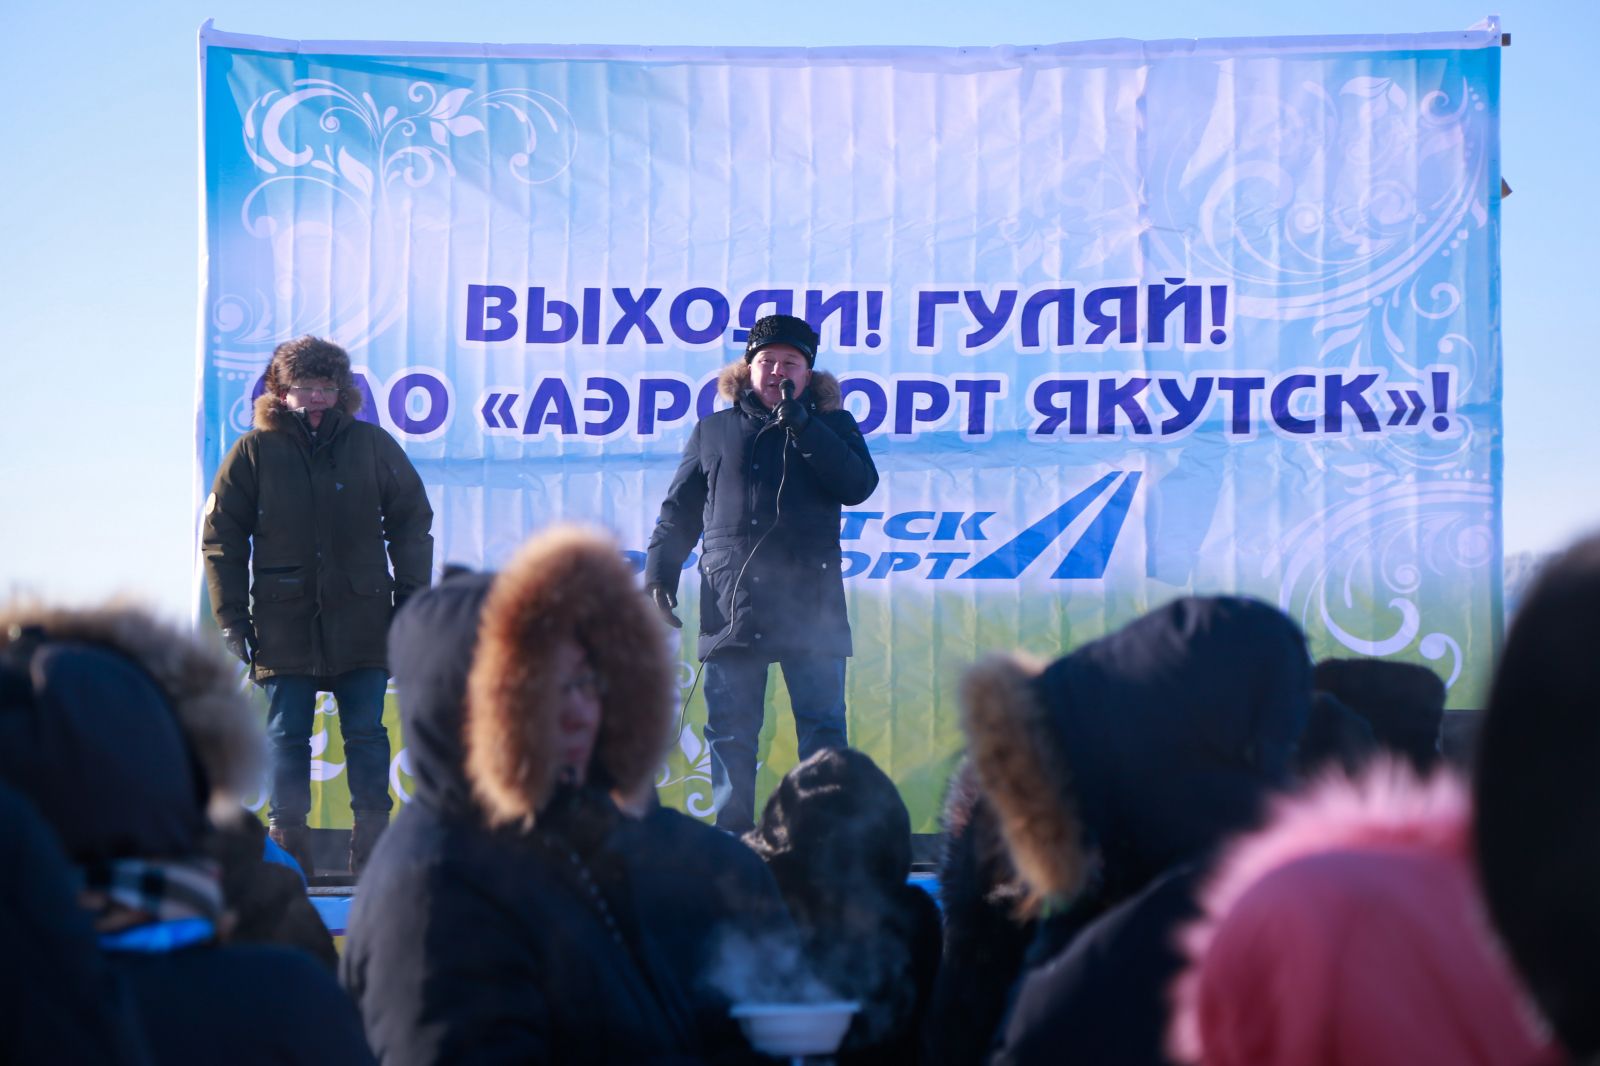 Аэропорт «Якутск» на Белом озере открыл каток и снежную горку для детворы